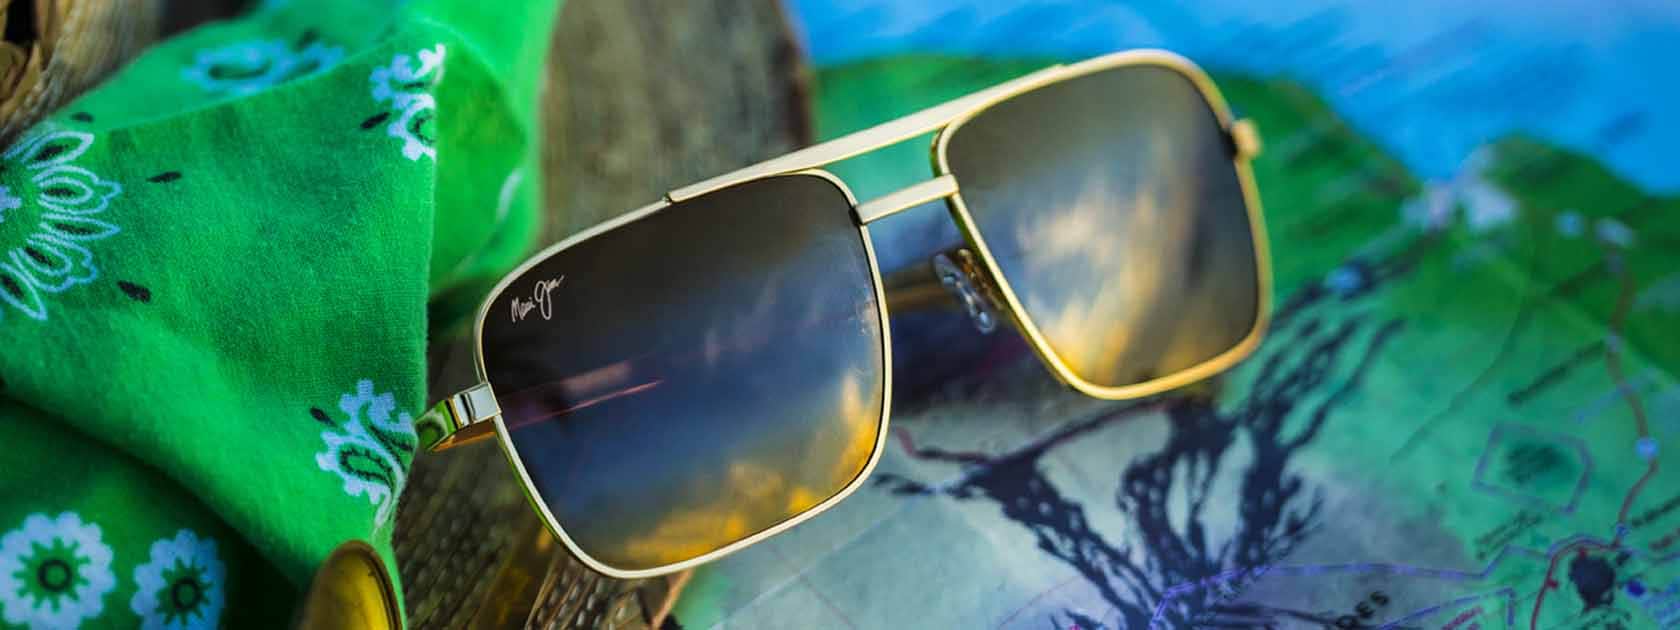 Aviator Sunglasses for Men Polarized Lightweight Fashion Frameless